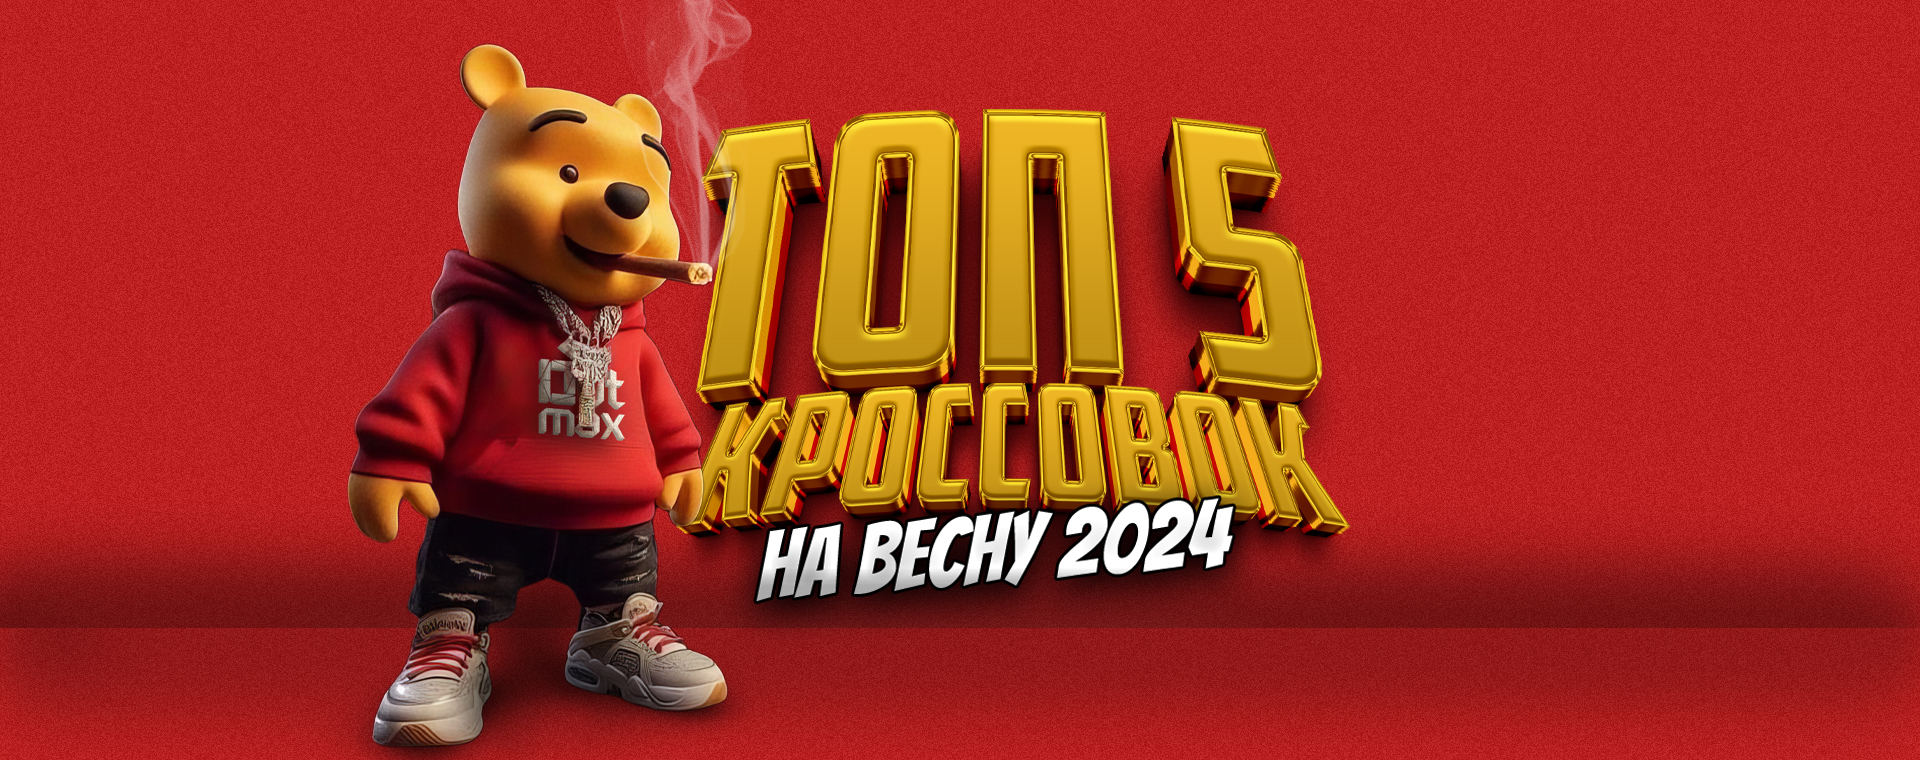 ТОП-5 КРОССОВОК НА ВЕСНУ 2024